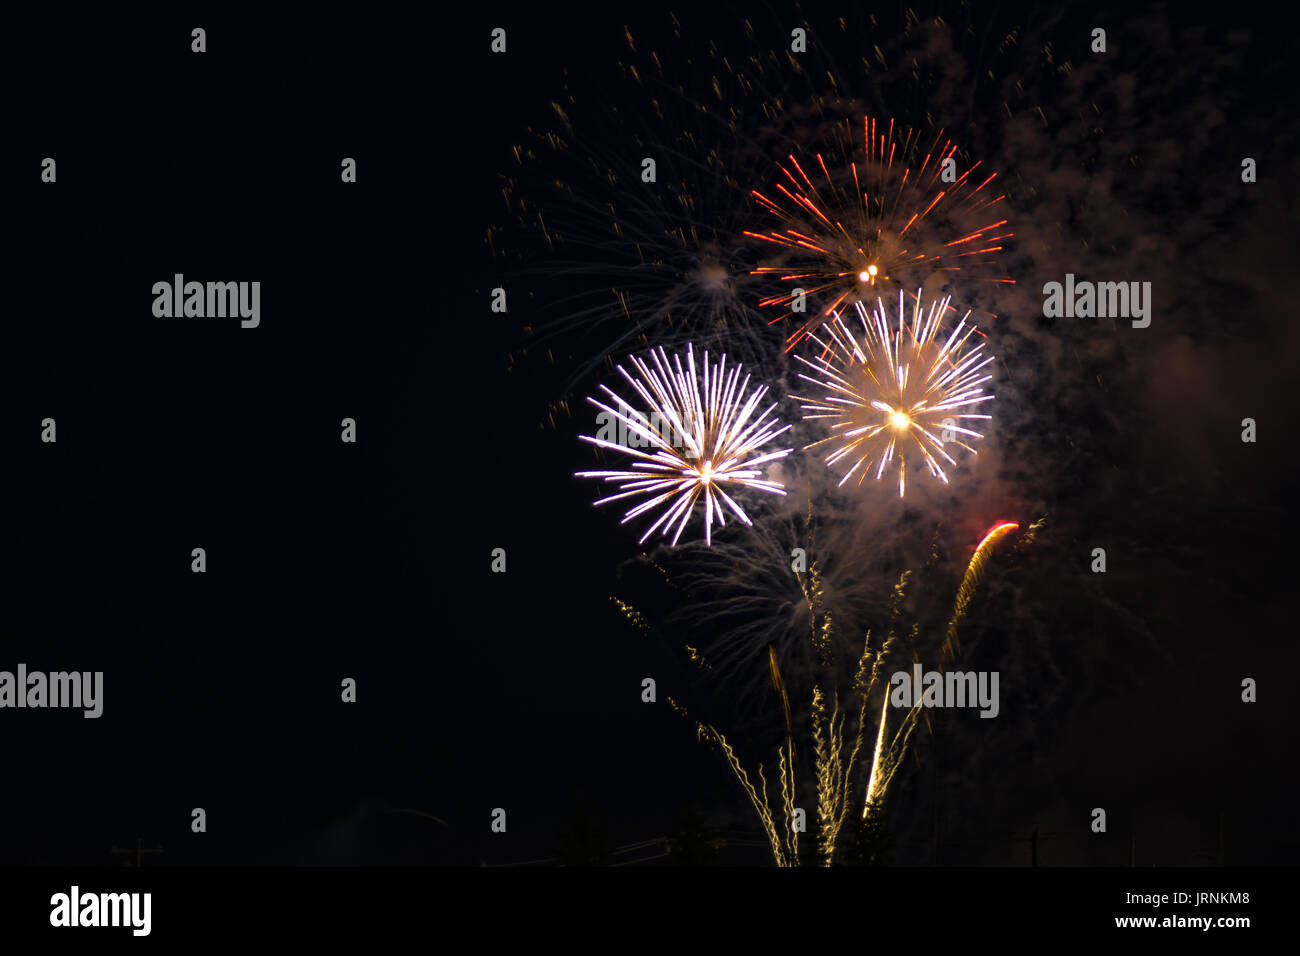 Brillantes Feuerwerk von roten, gelben und weißen Farben, gegen einen schwarzen Himmel während ein Abend der Feier ein nationaler Feiertag. Stockfoto